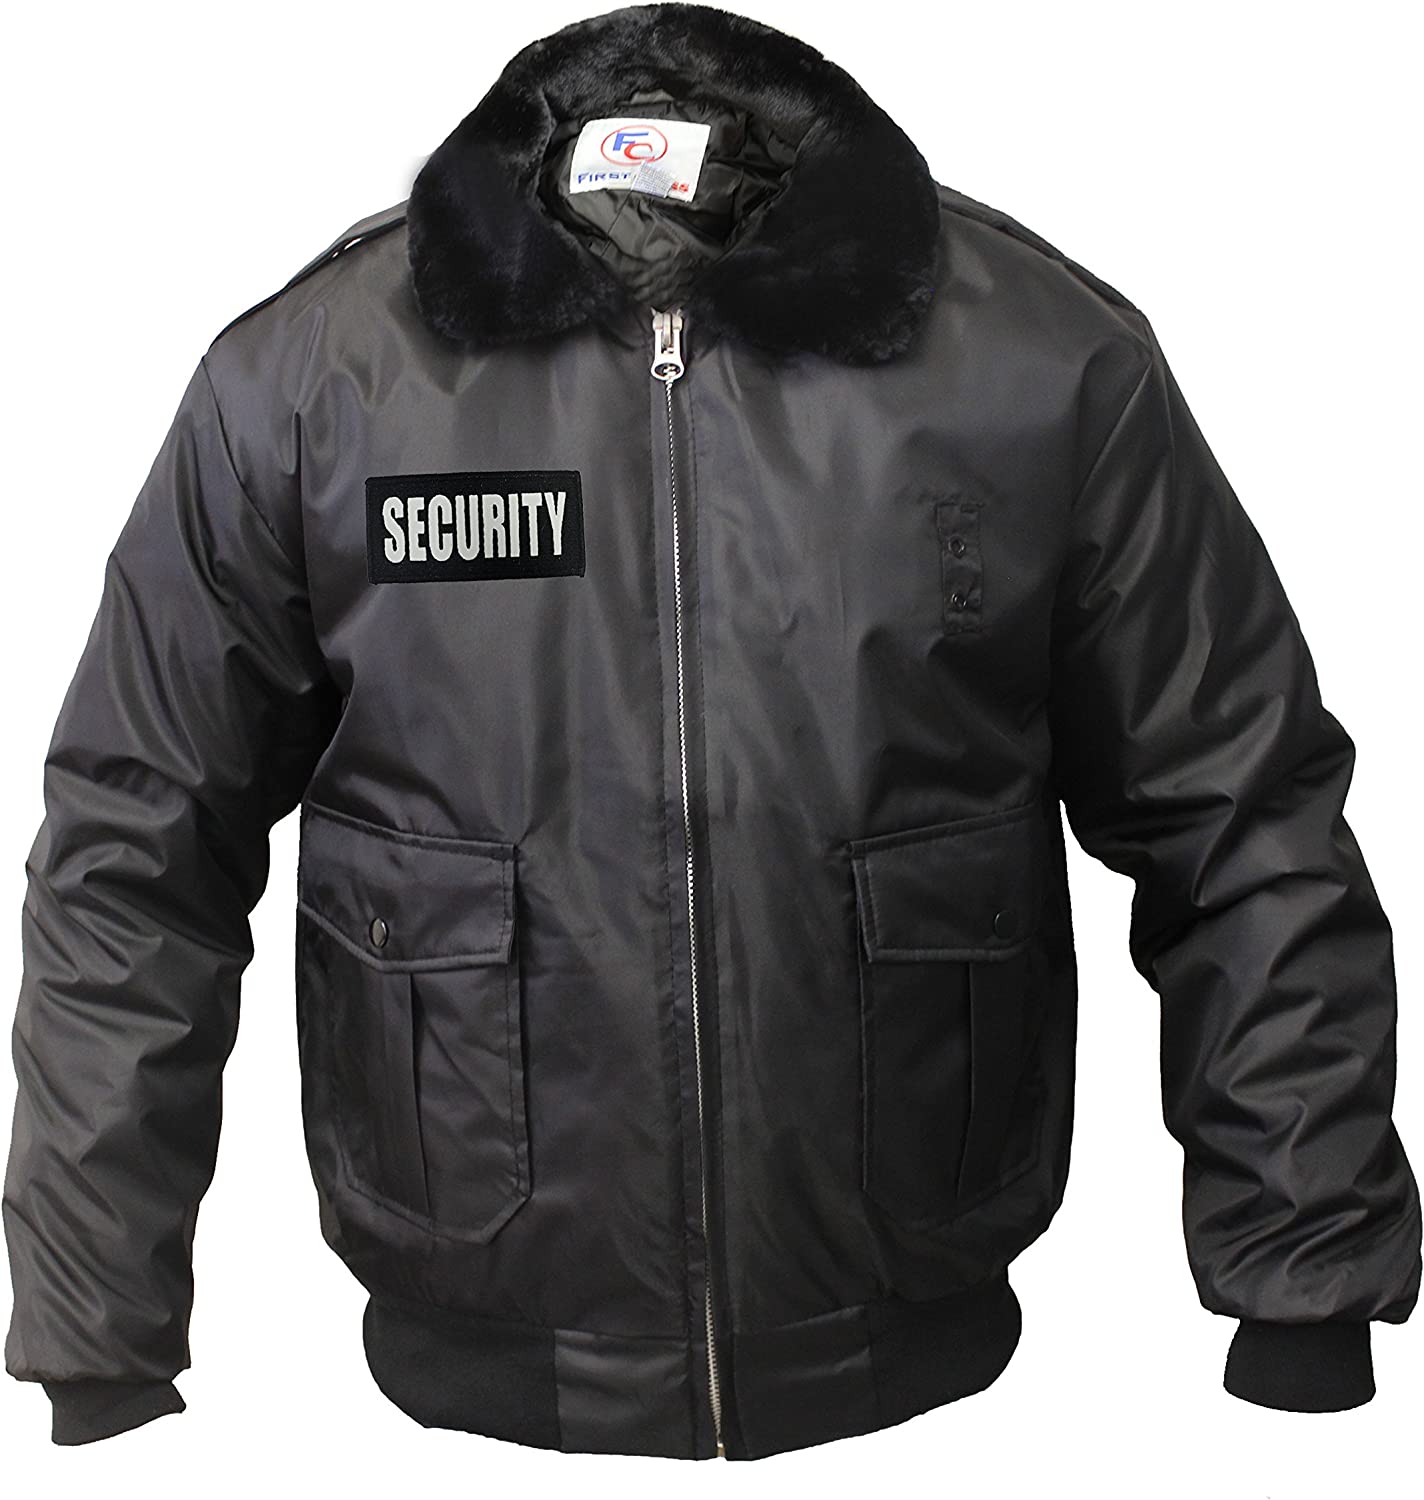 Куртка мужская черного цвета. Куртка Security м 50361. Куртка Security Rothco. Куртка Bodyguard с воротником. Арктика секьюрити куртка.